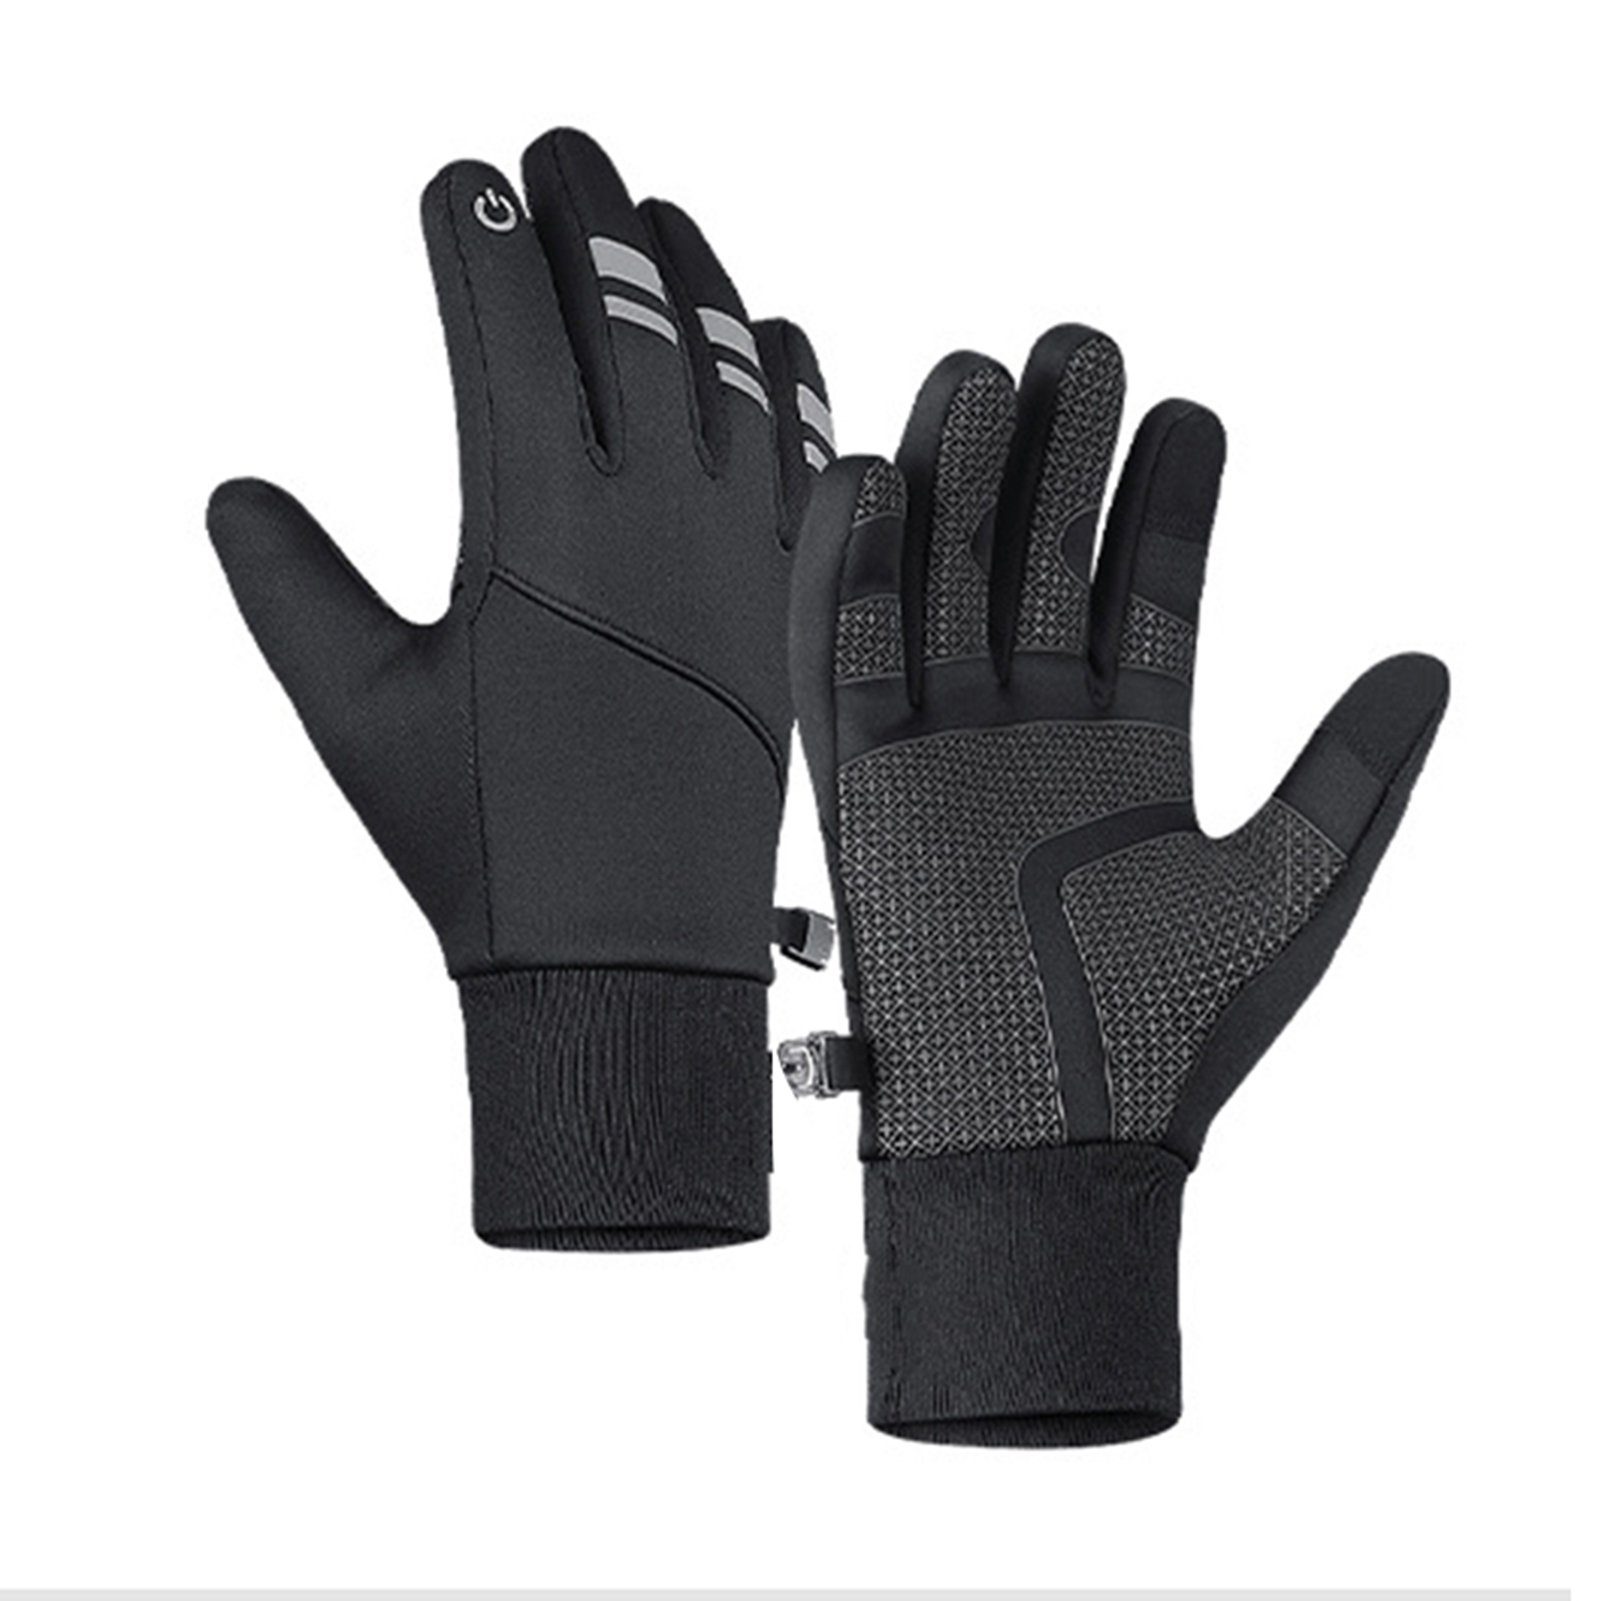 Blusmart Fahrradhandschuhe Thermo-Handschuhe Wasserdichte Mit Winter-Fahrradhandschuhe, black